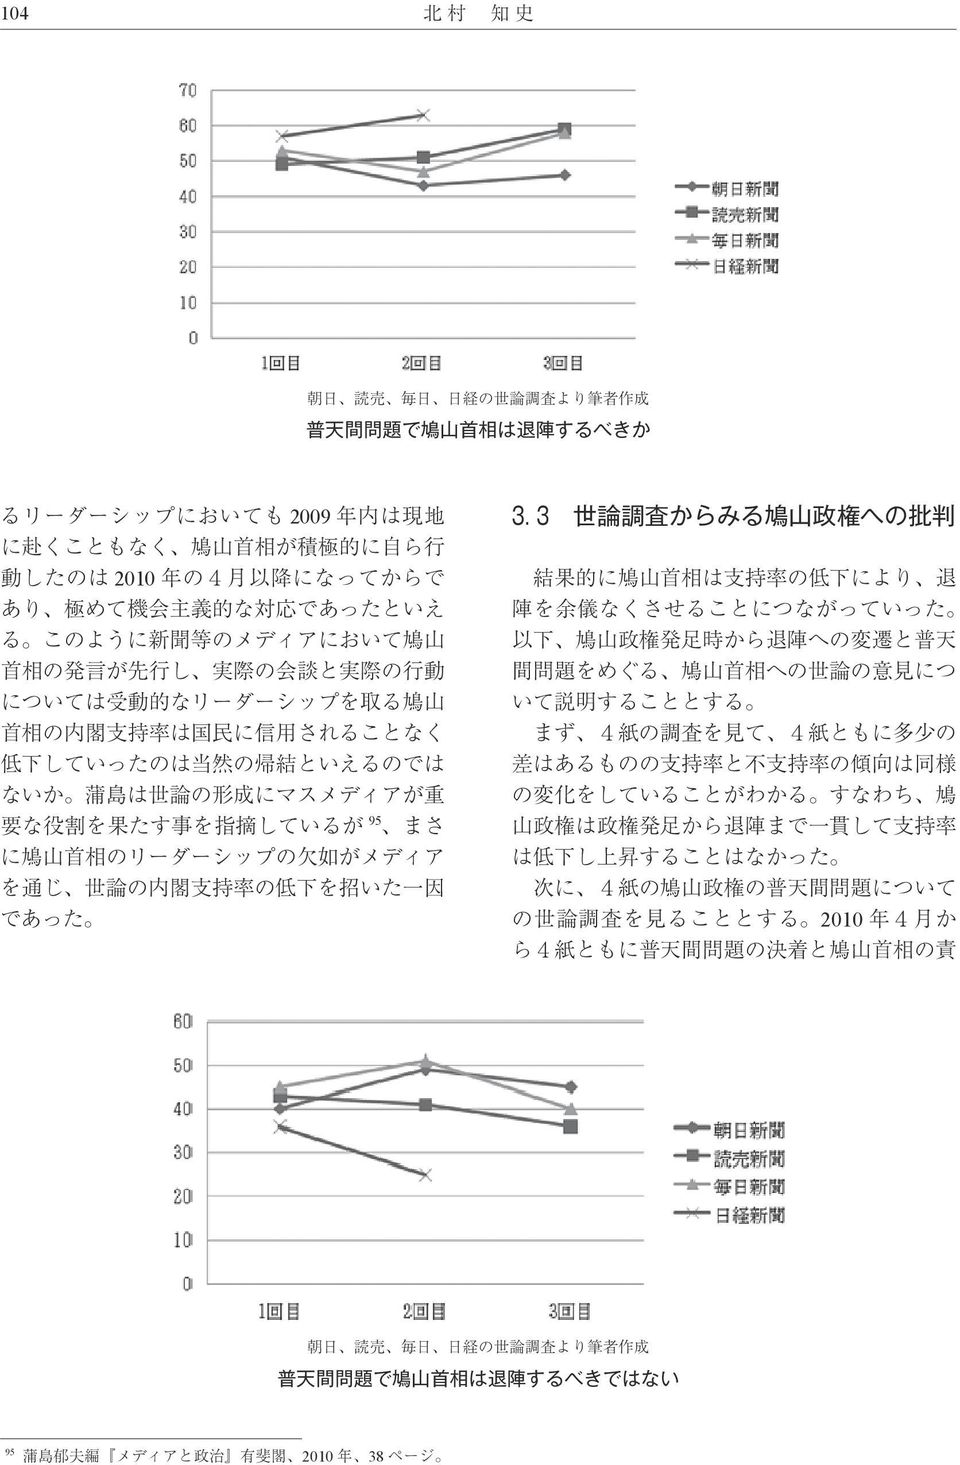 3 世 論 調 査 からみる 鳩 山 政 権 への 批 判